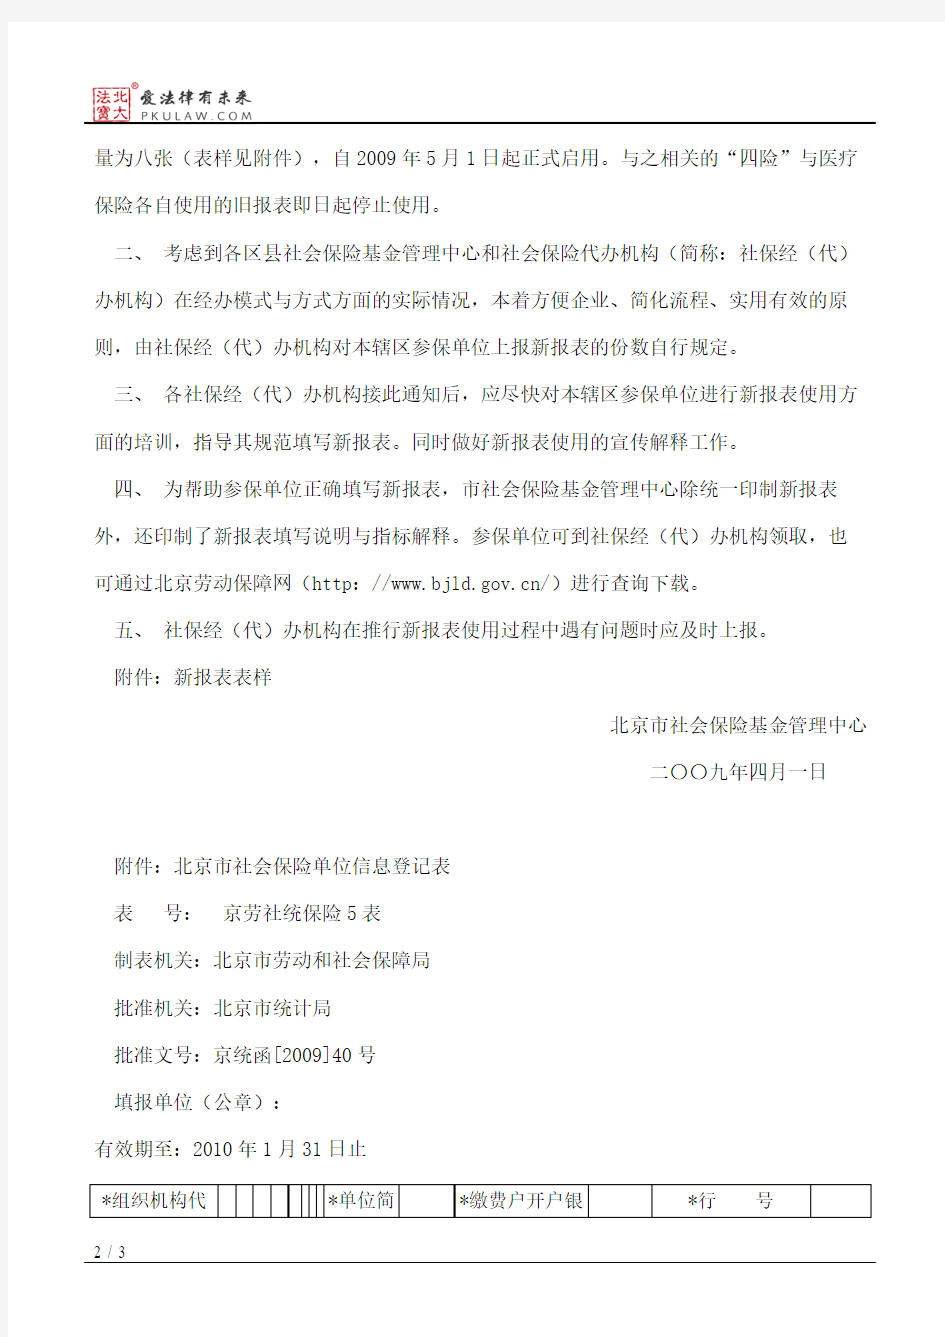 北京市社会保险基金管理中心关于启用部分“五险合一”新报表问题的通知